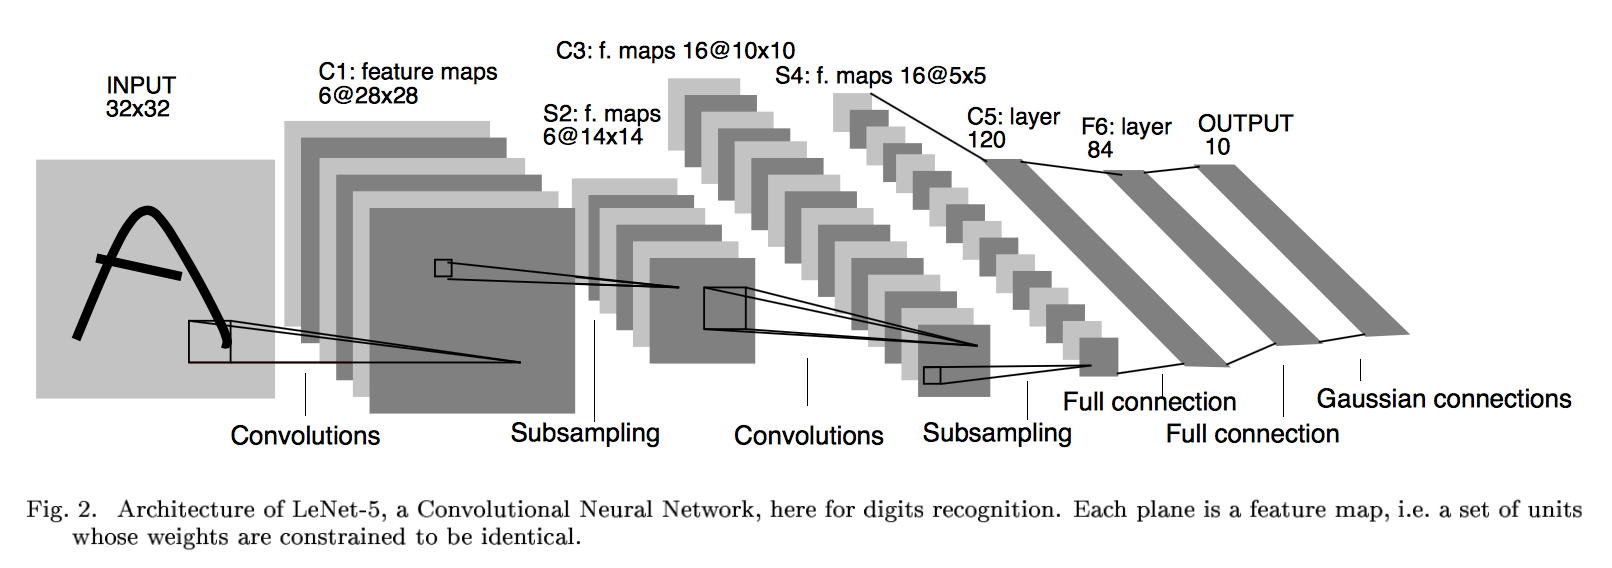 LeNet architecture representation from the original 1998 LeCun et al. paper.